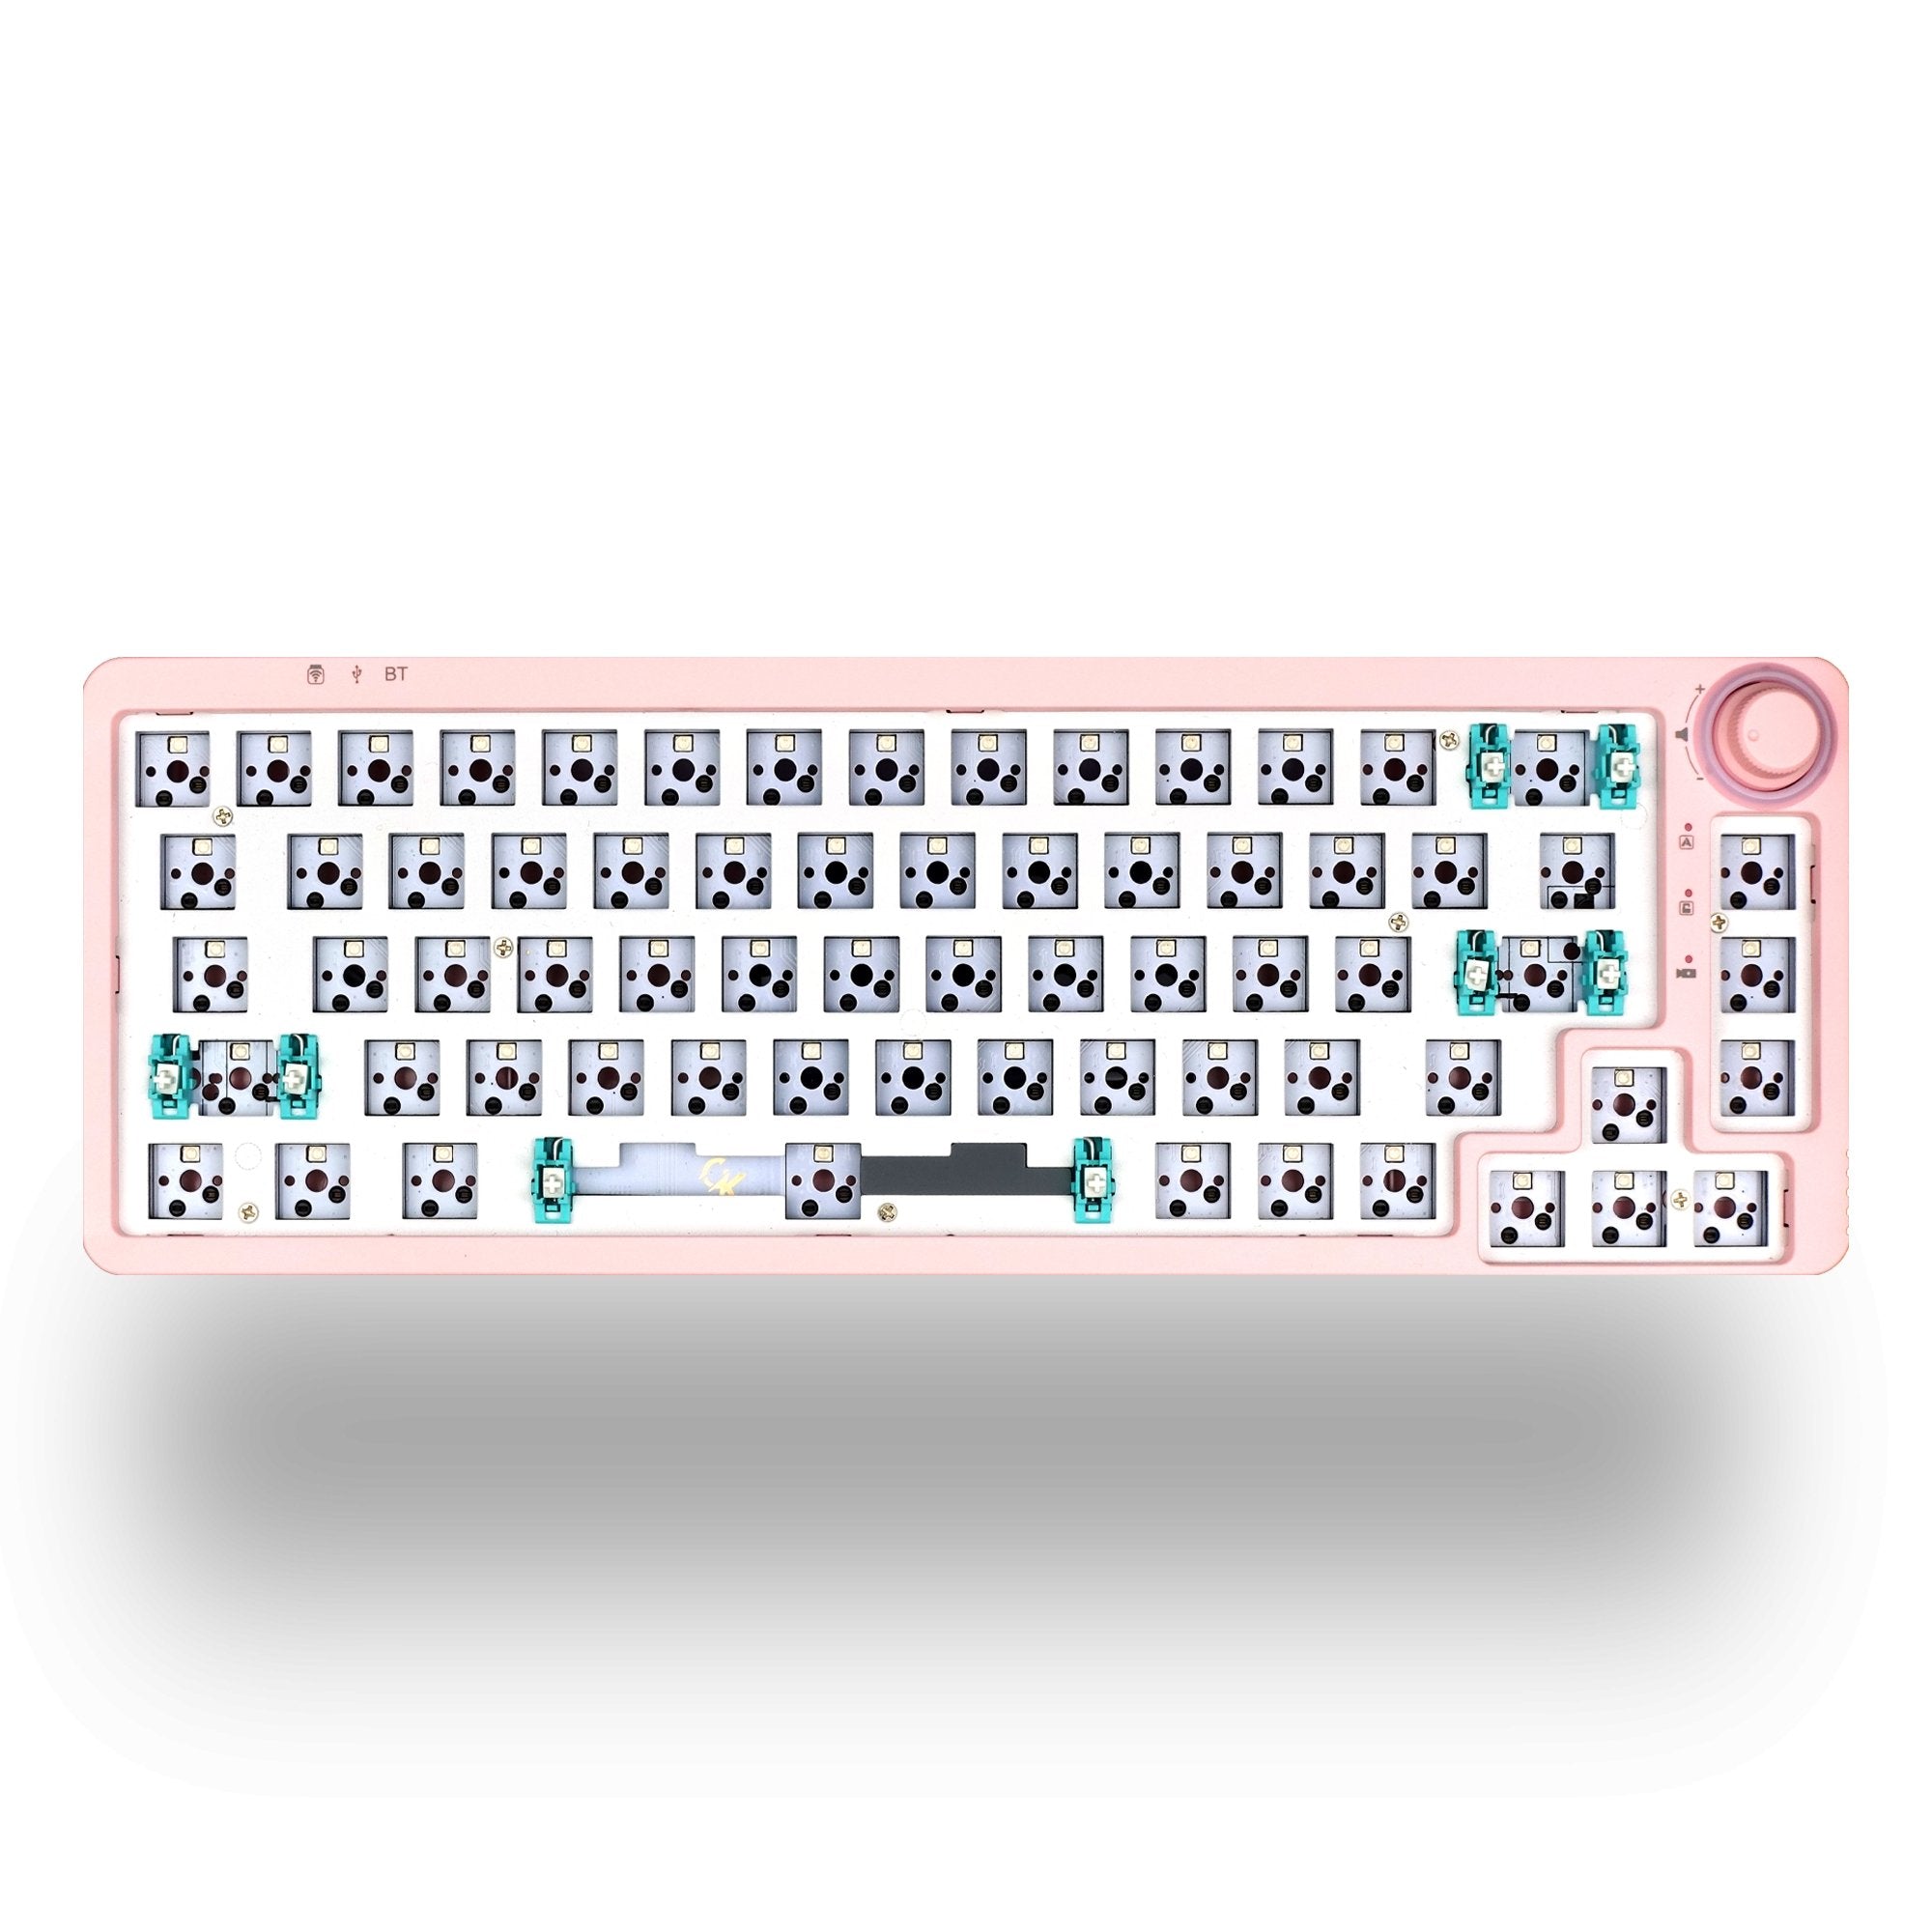 Alpha67 (65%) - Wireless Mechanical Keyboard Barebone Kit - Goblintechkeys